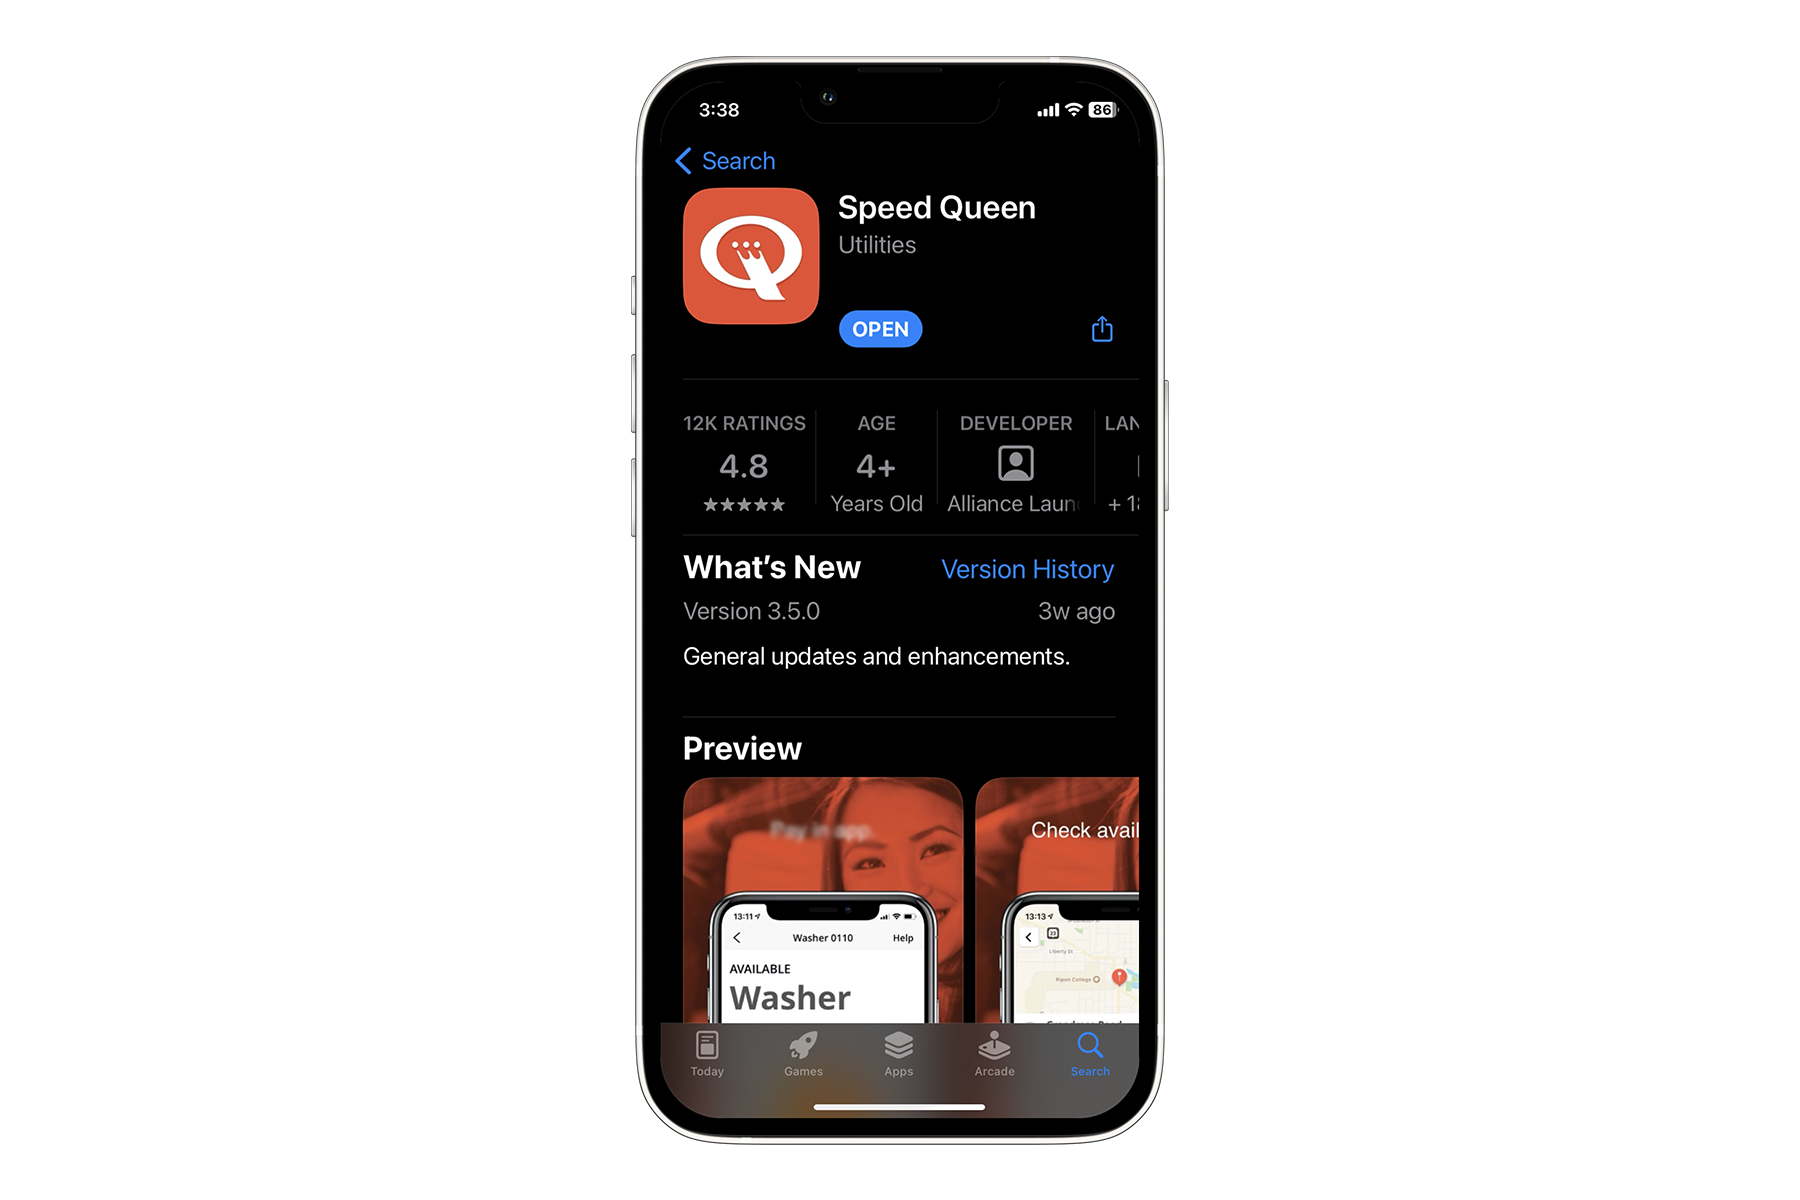 Speed Queen app in the app store